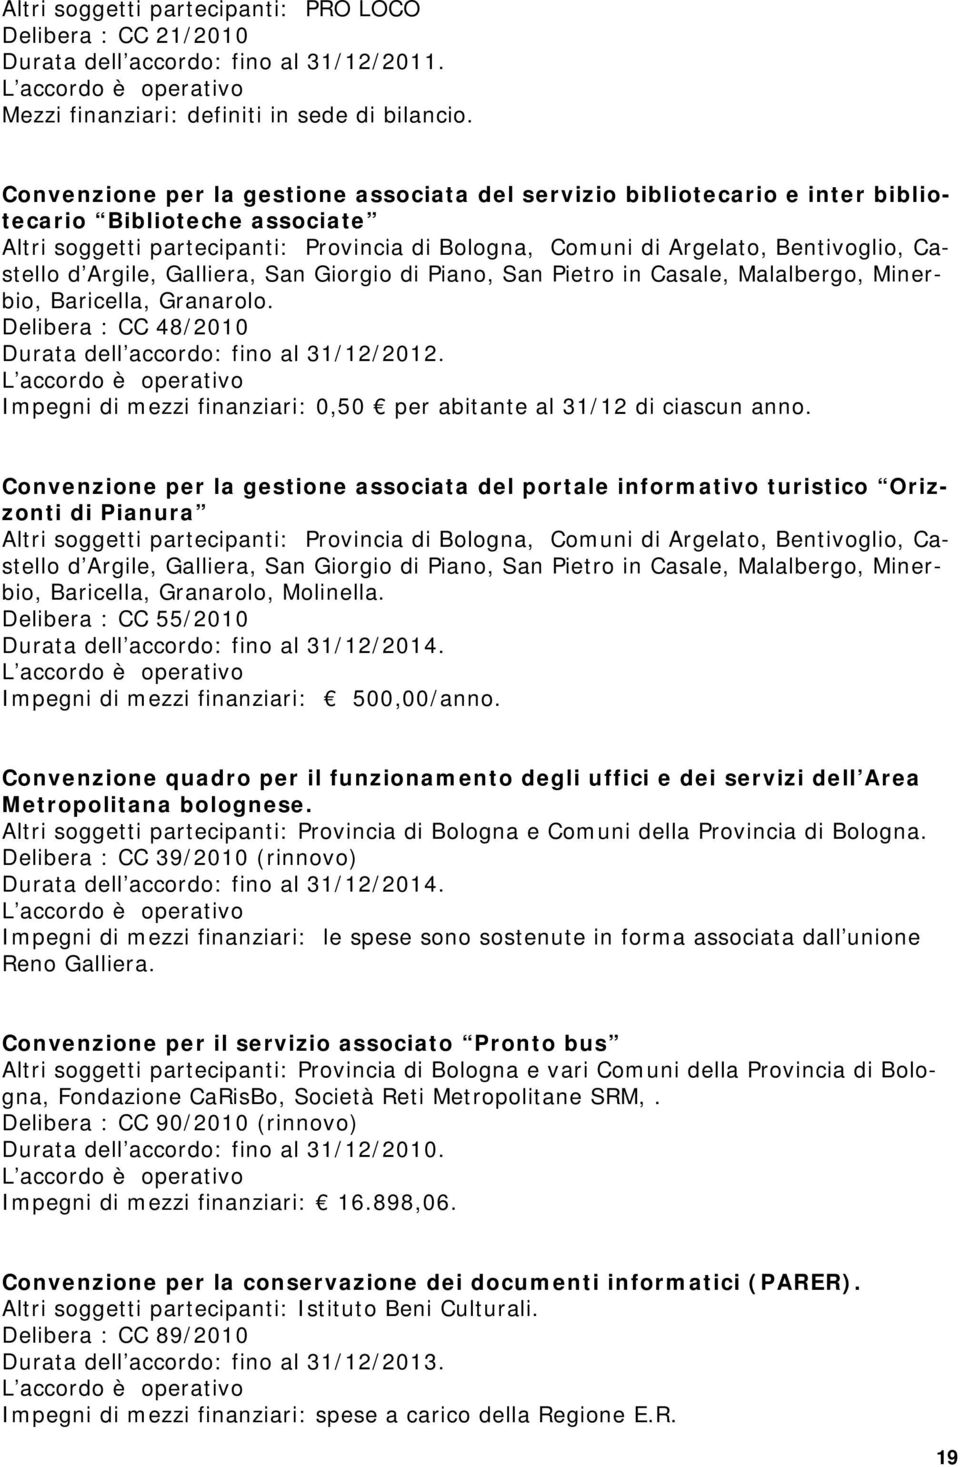 Castello d Argile, Galliera, San Giorgio di Piano, San Pietro in Casale, Malalbergo, Minerbio, Baricella, Granarolo. Delibera : CC 48/2010 Durata dell accordo: fino al 31/12/2012.